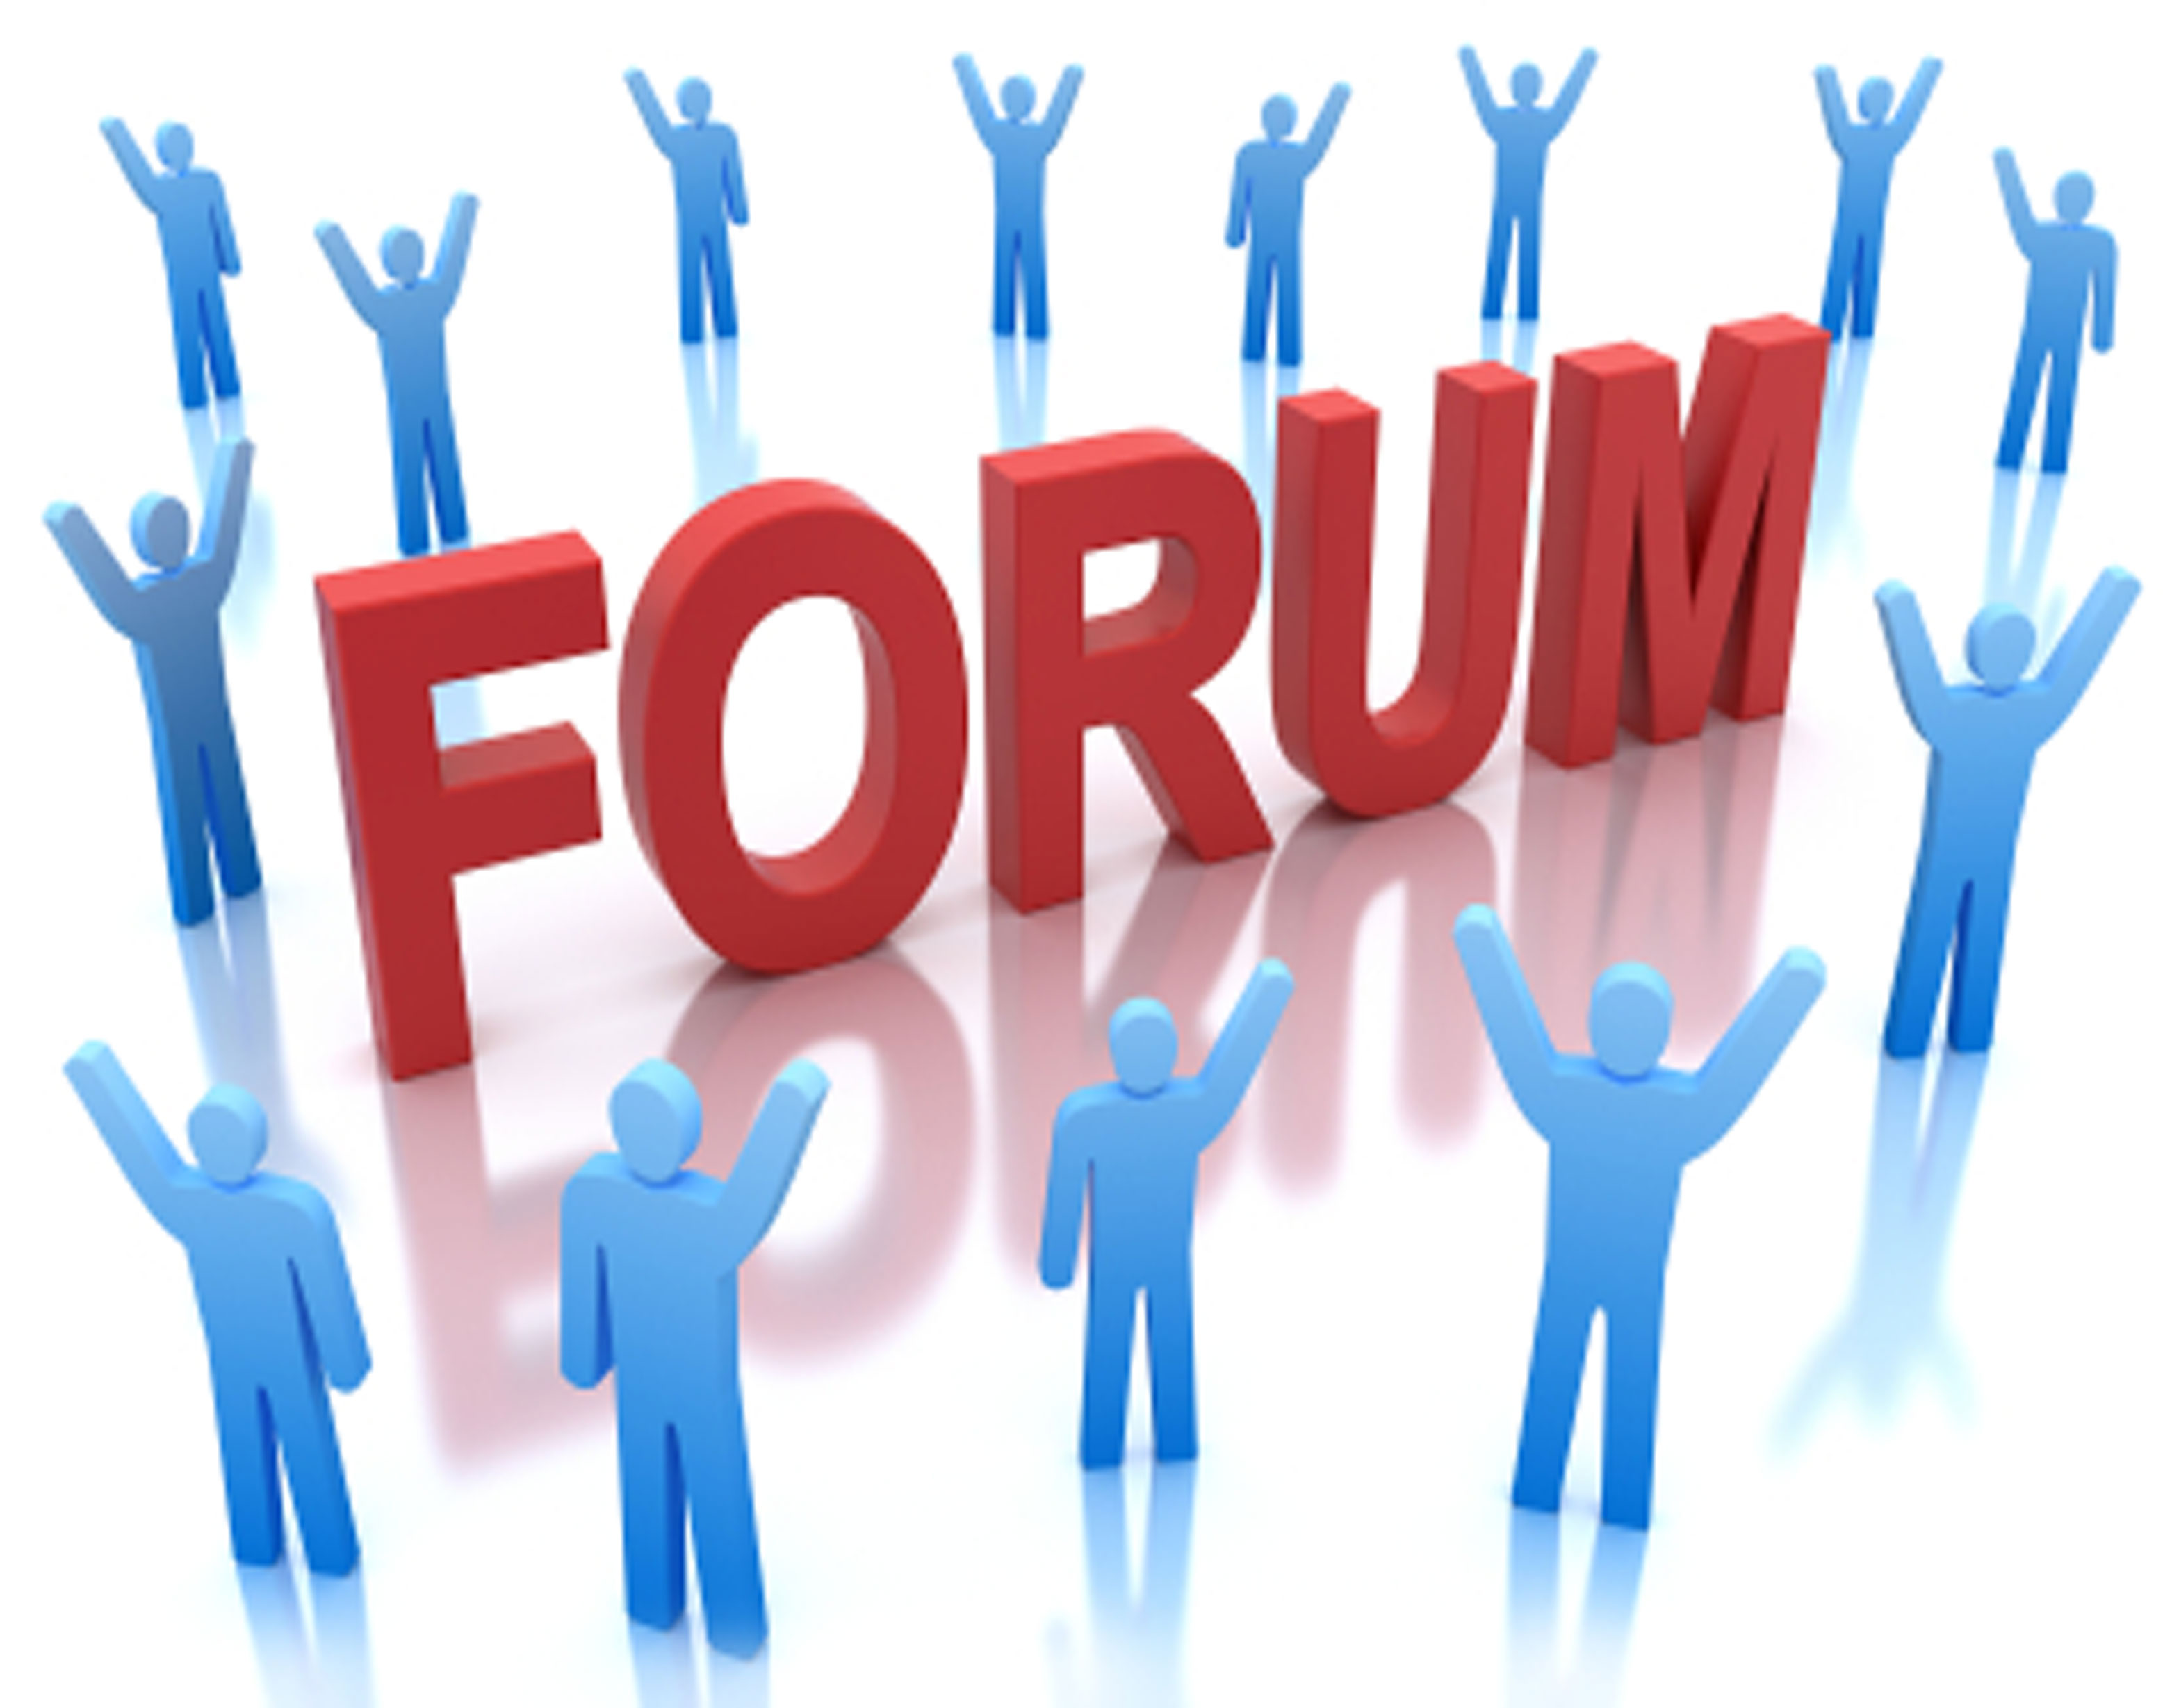 Forum ens. Интернет форум. Тематические форумы и блоги. Картинки для форума. Веб форум картинки.